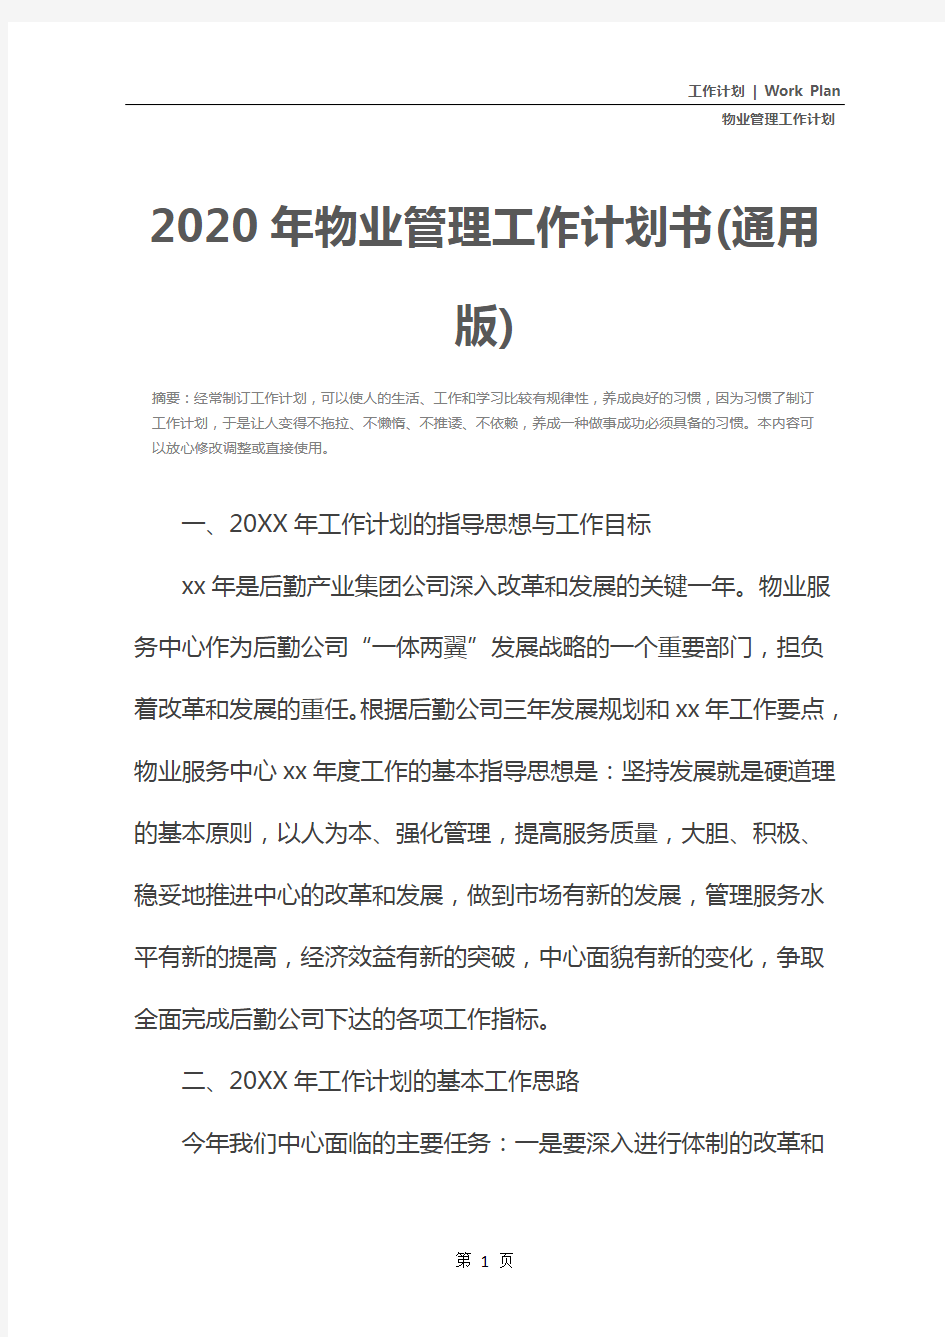 2020年物业管理工作计划书(通用版)